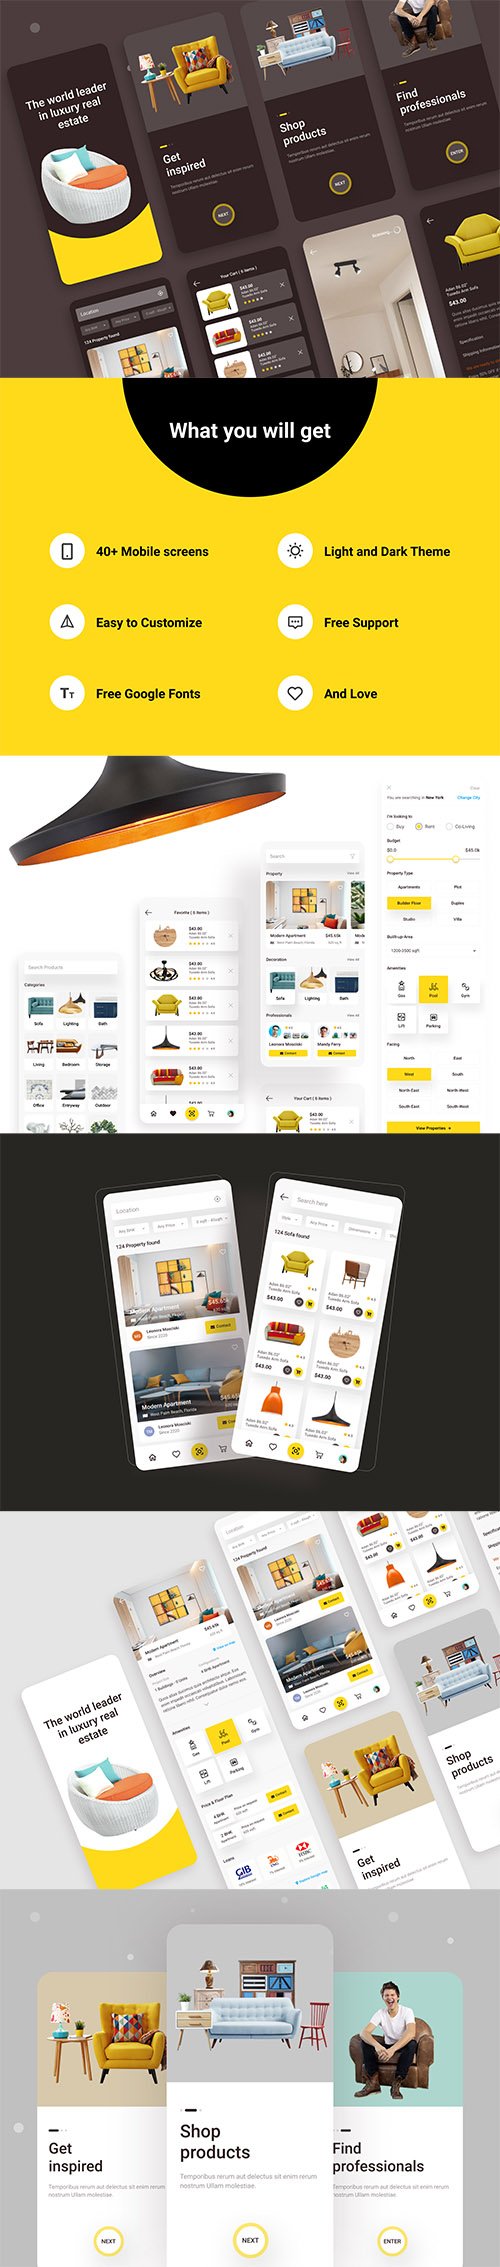 Real Estate & E-commerce UI Kit